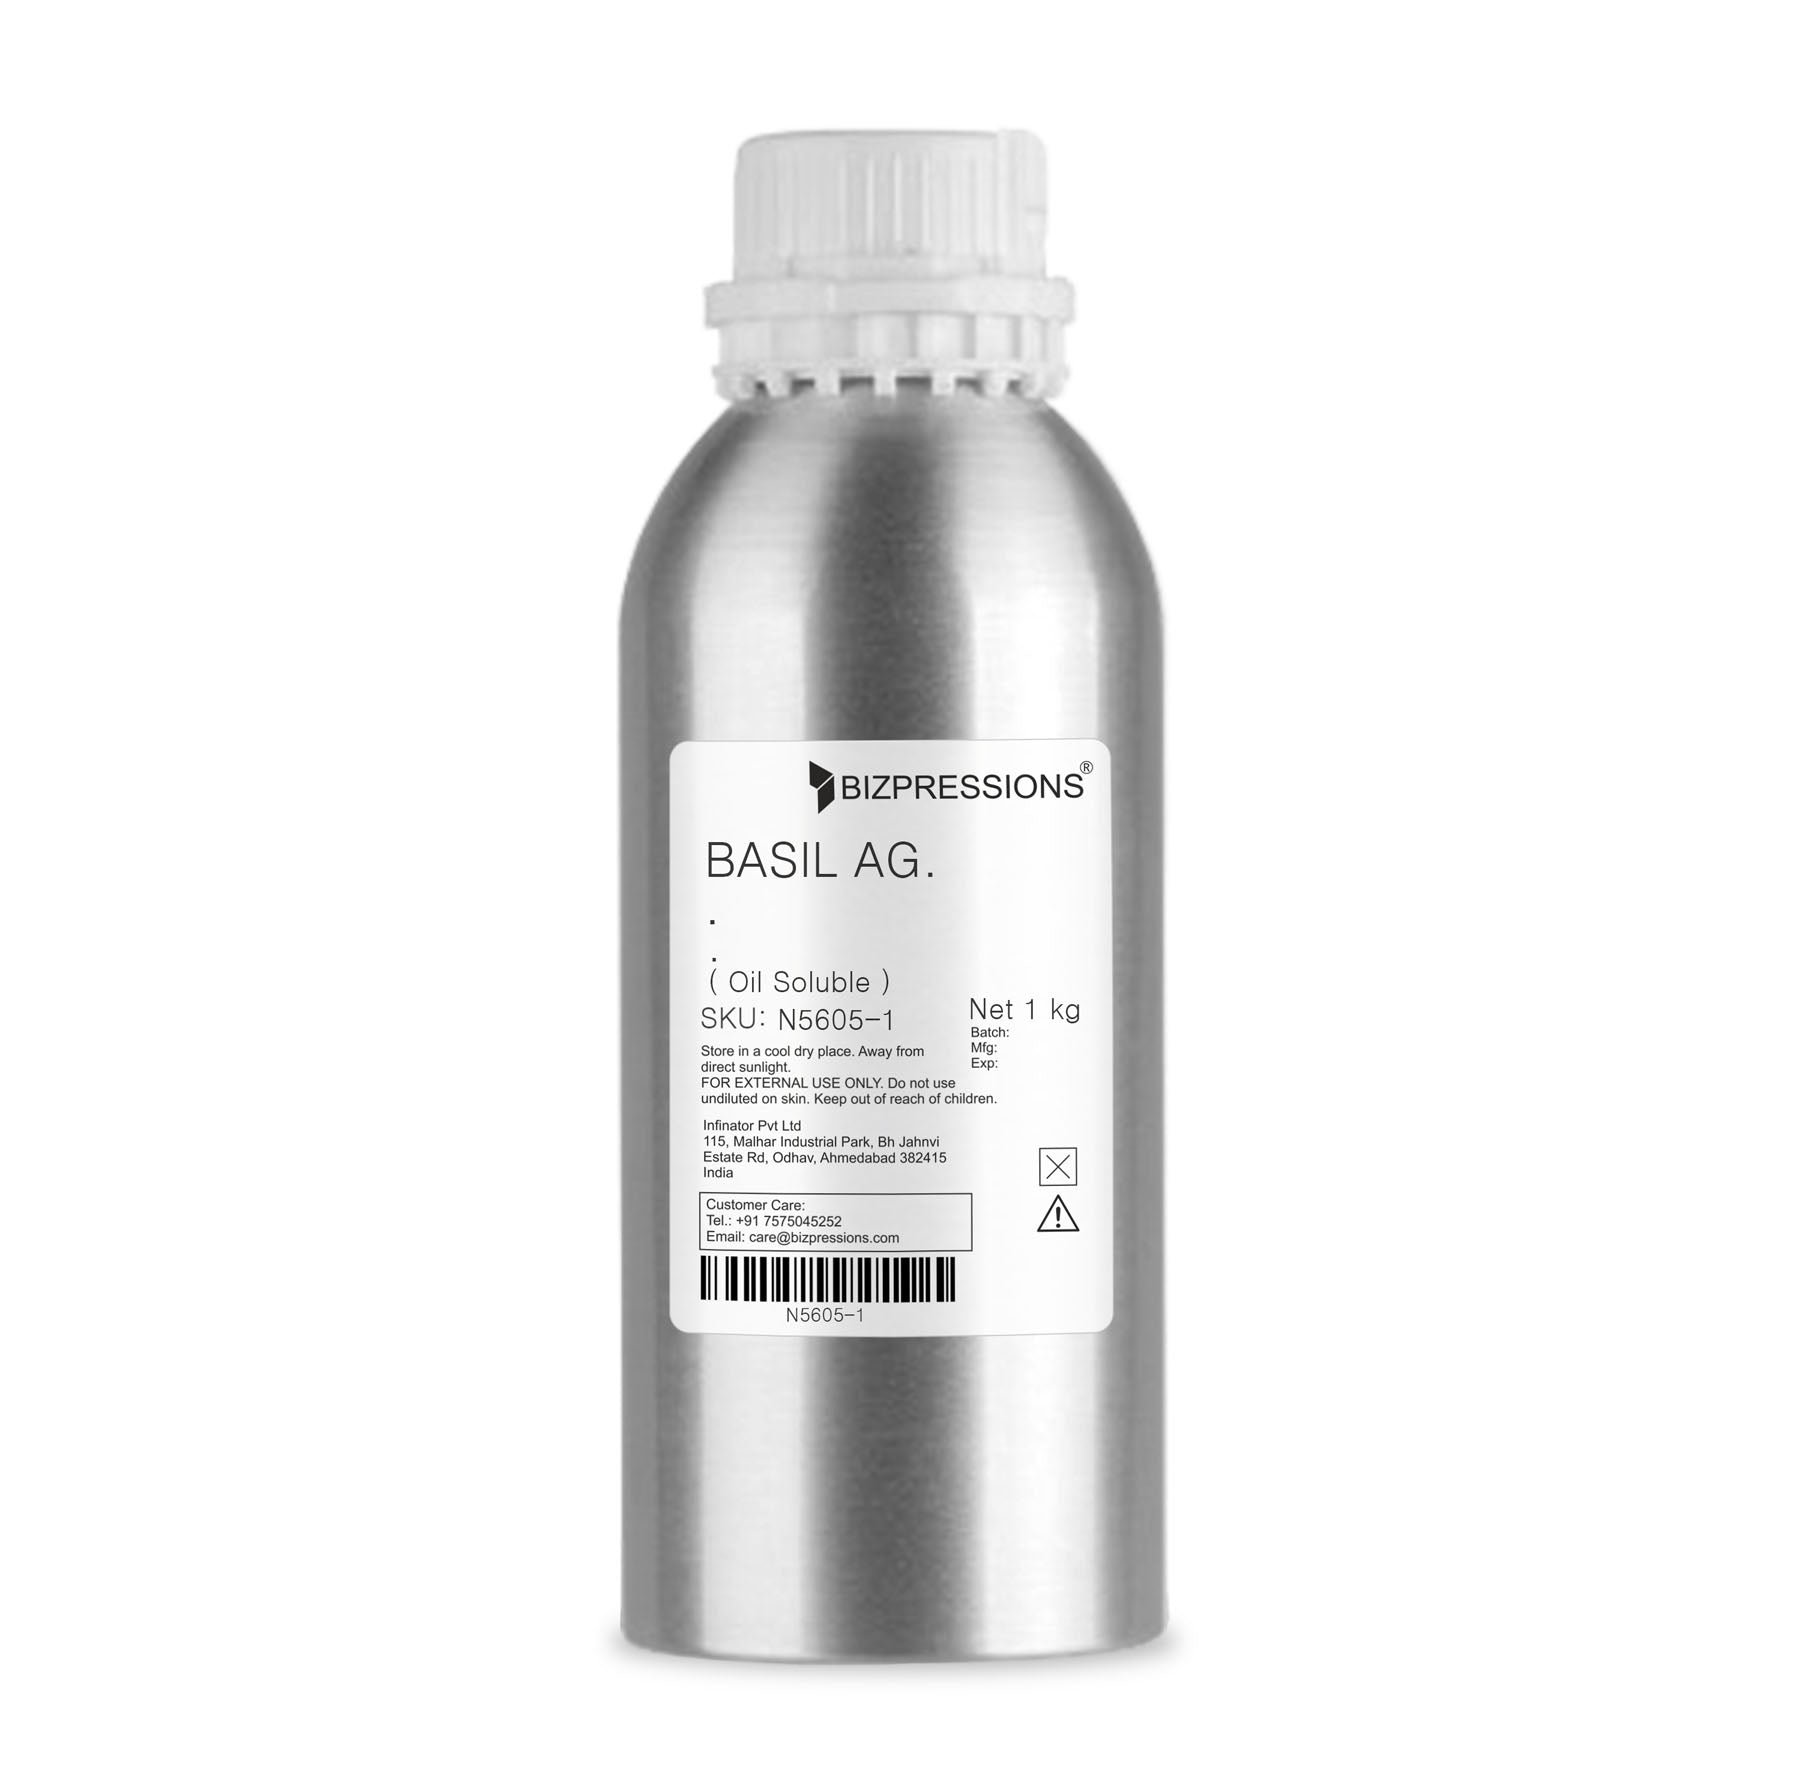 BASIL AG. - Fragrance ( Oil Soluble ) - 1 kg